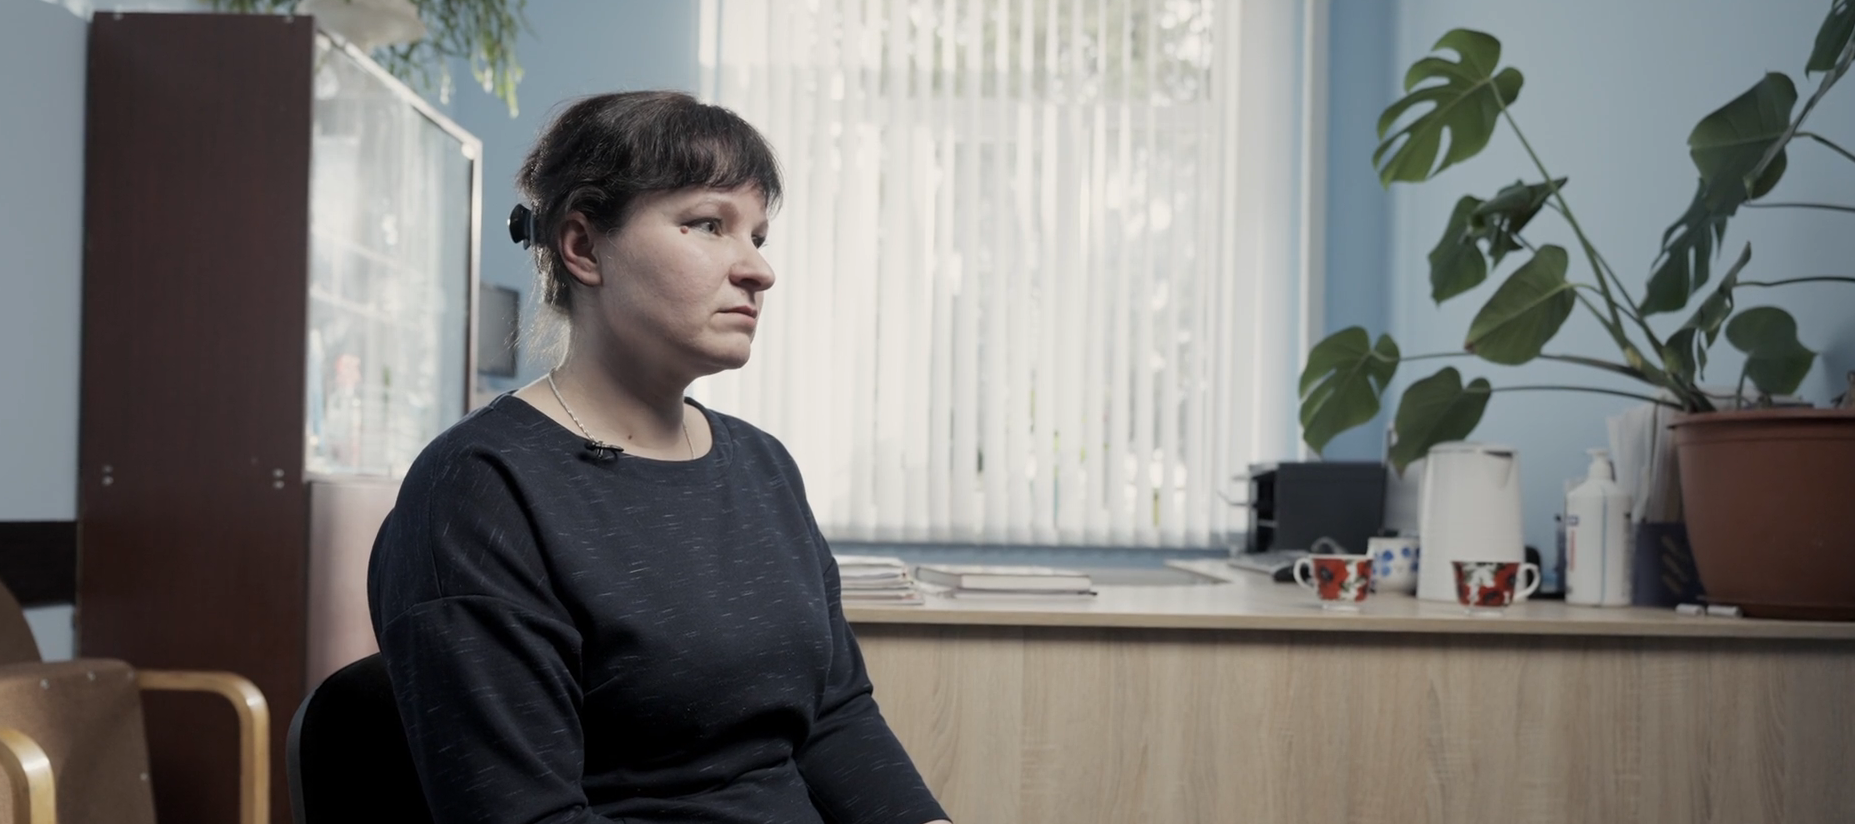 Istoria unei victime a discriminării în Republica Moldova: perspectiva prin intermeniul unui video documentar